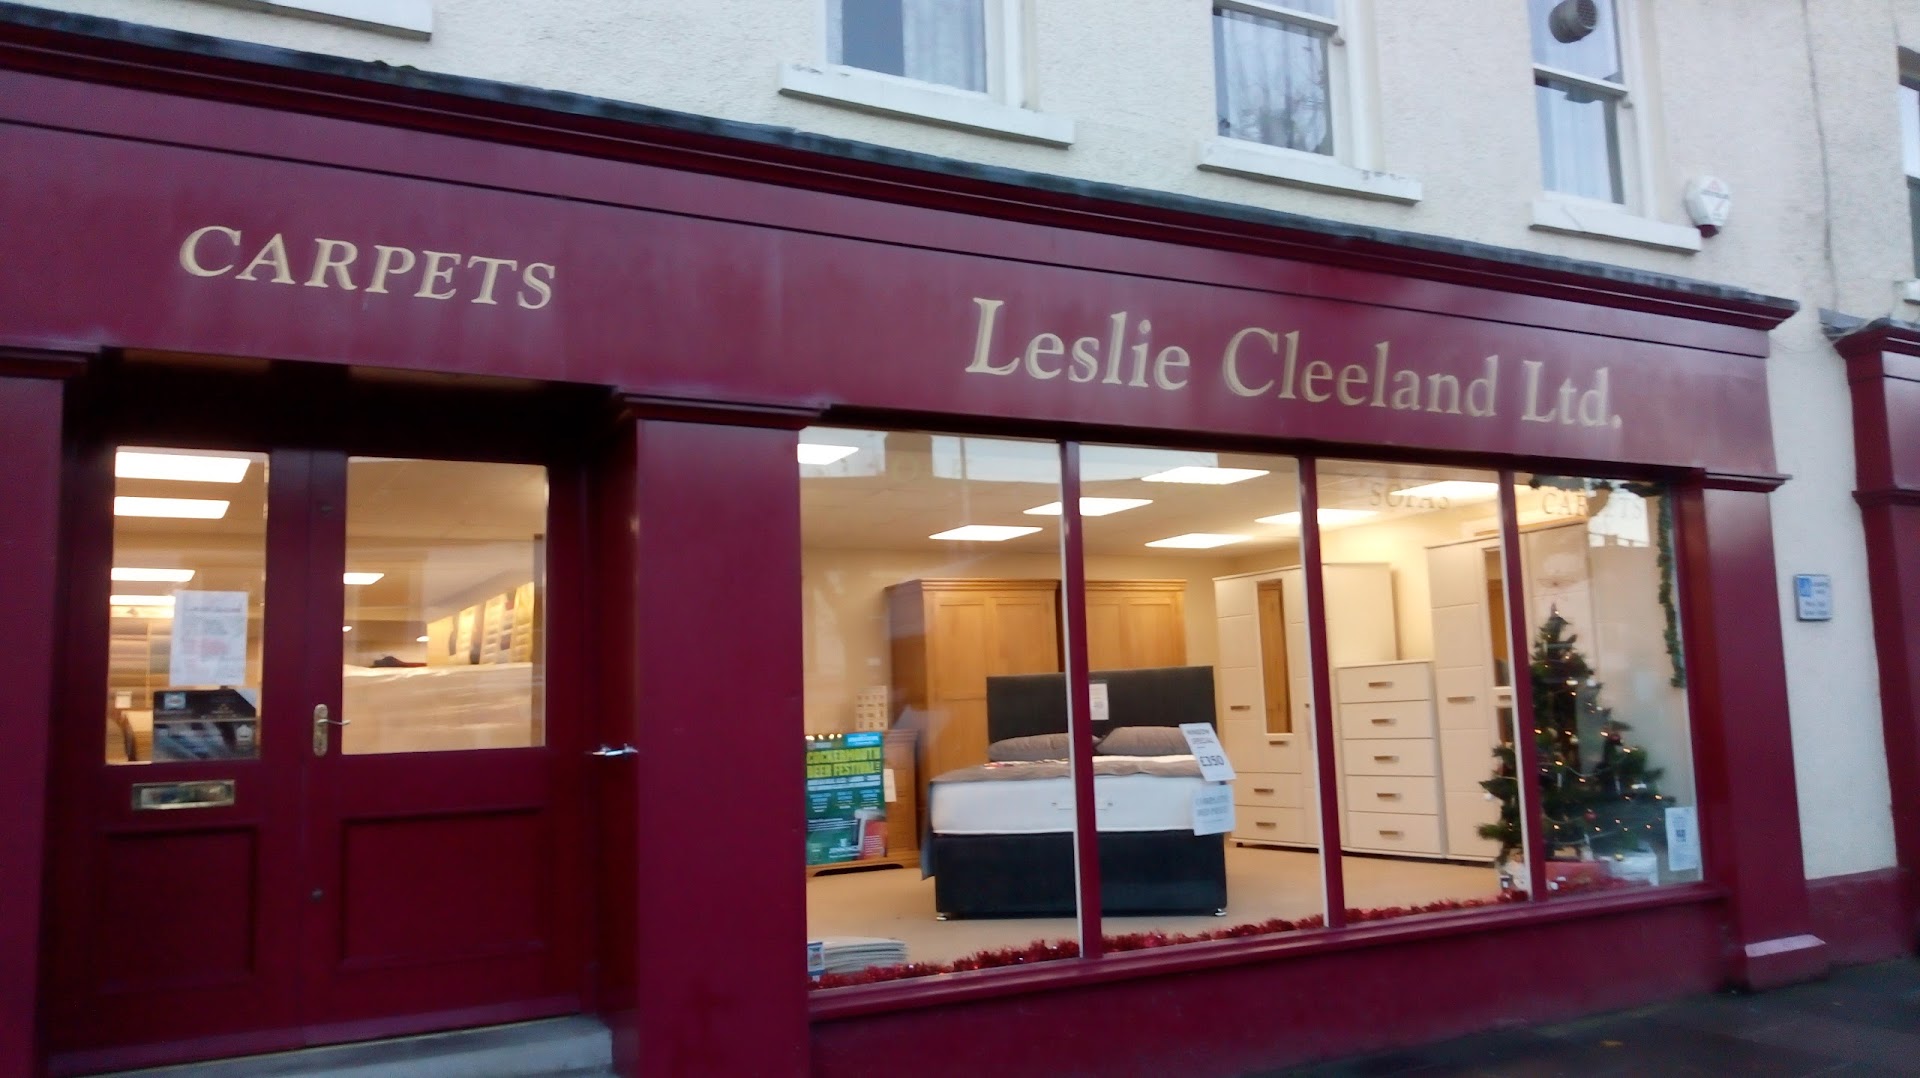 Leslie Cleeland Ltd